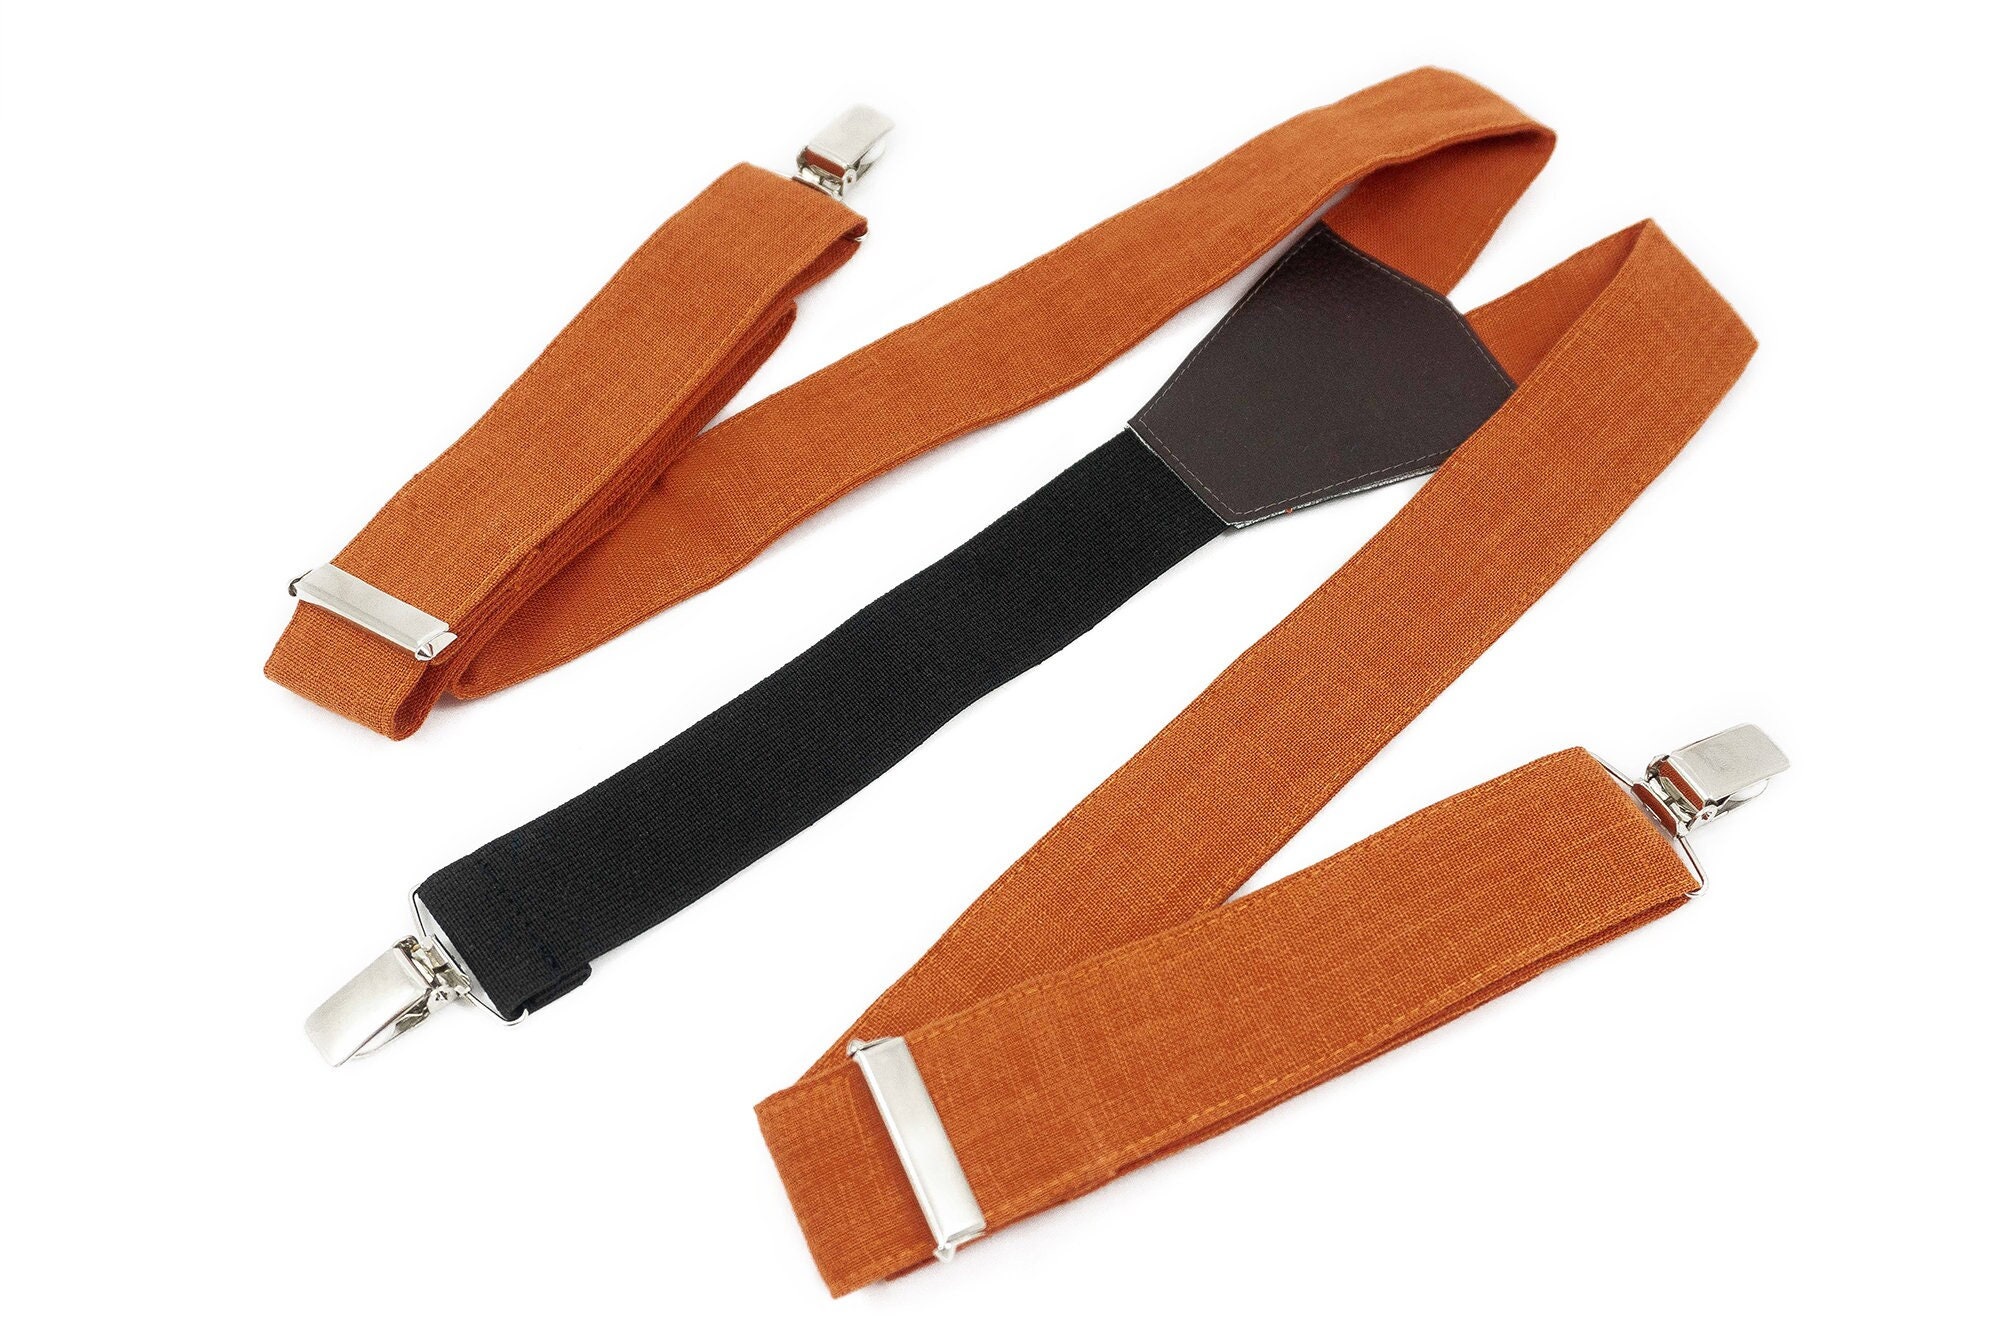 Burnt Orange Y-back Wedding Suspenders for Groomsmen and Groom